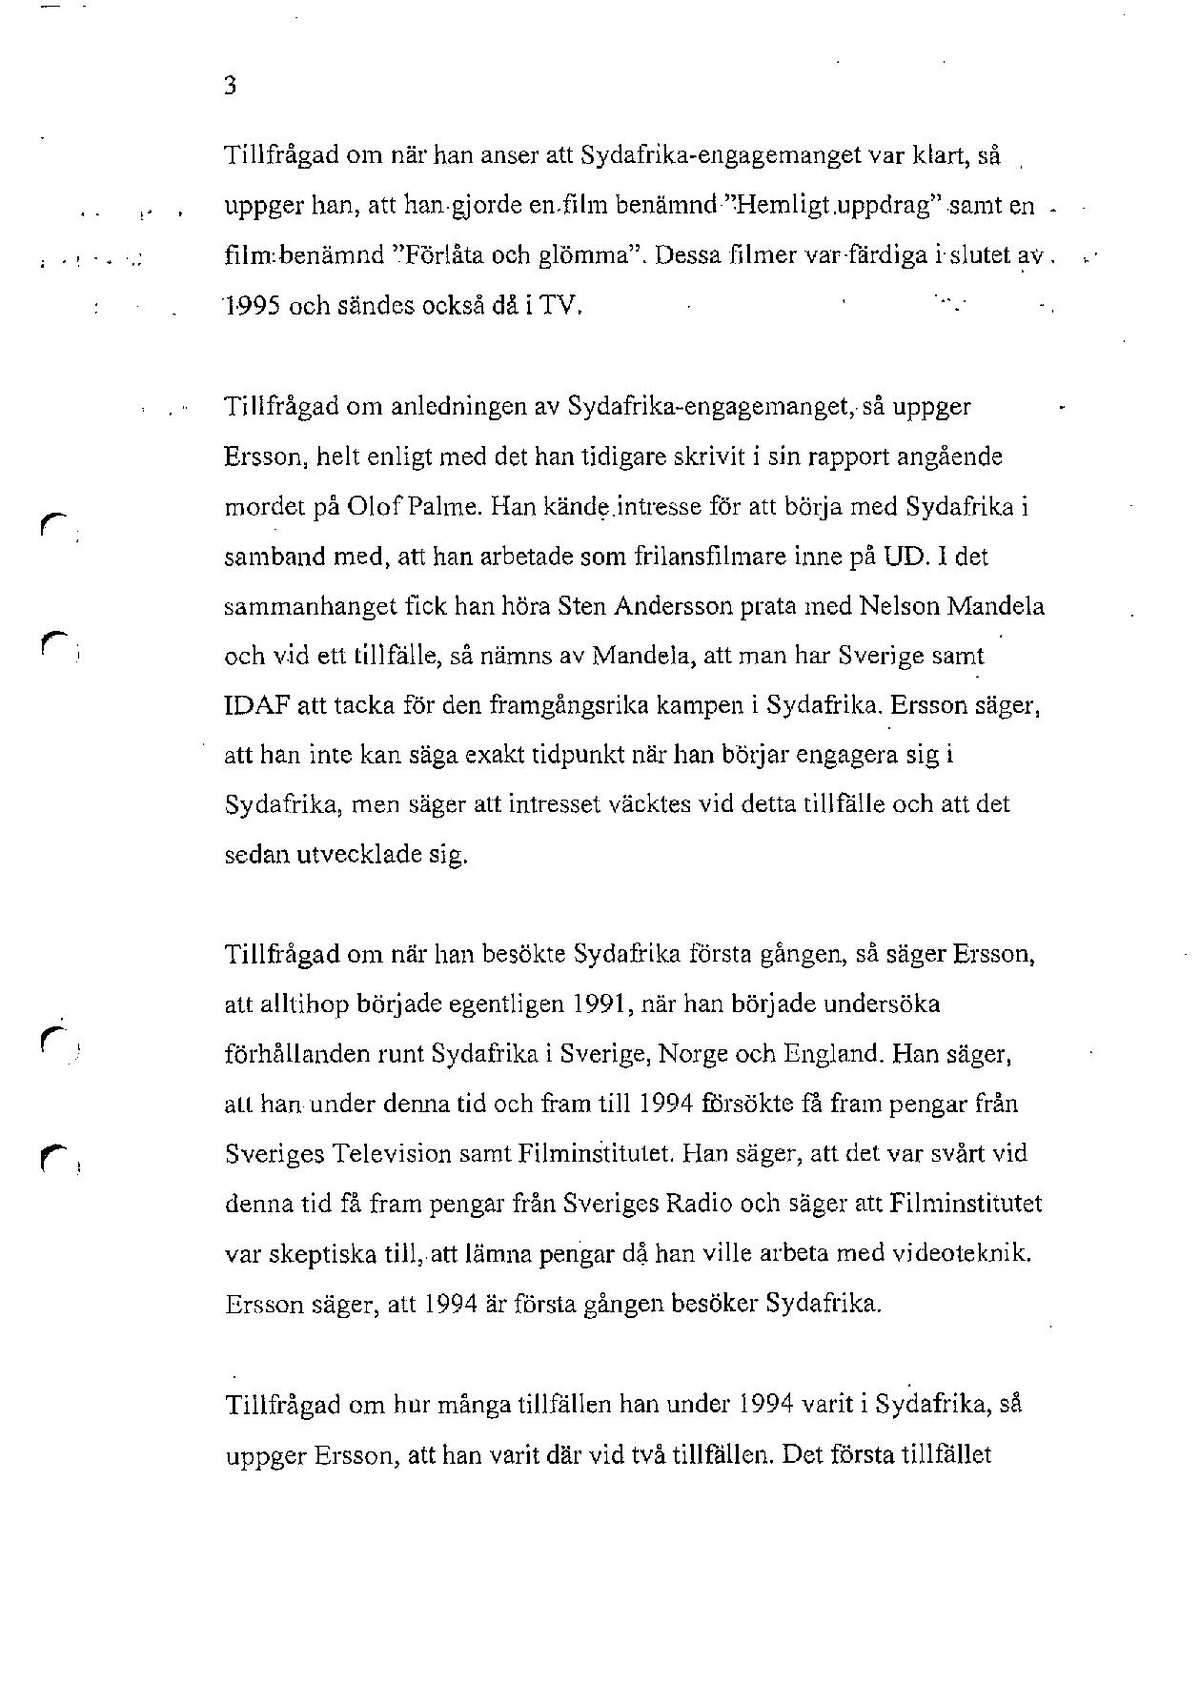 Pol-1996-11-18 HBG4818-00 Boris-Ersson-Stander-PM-förhör.pdf